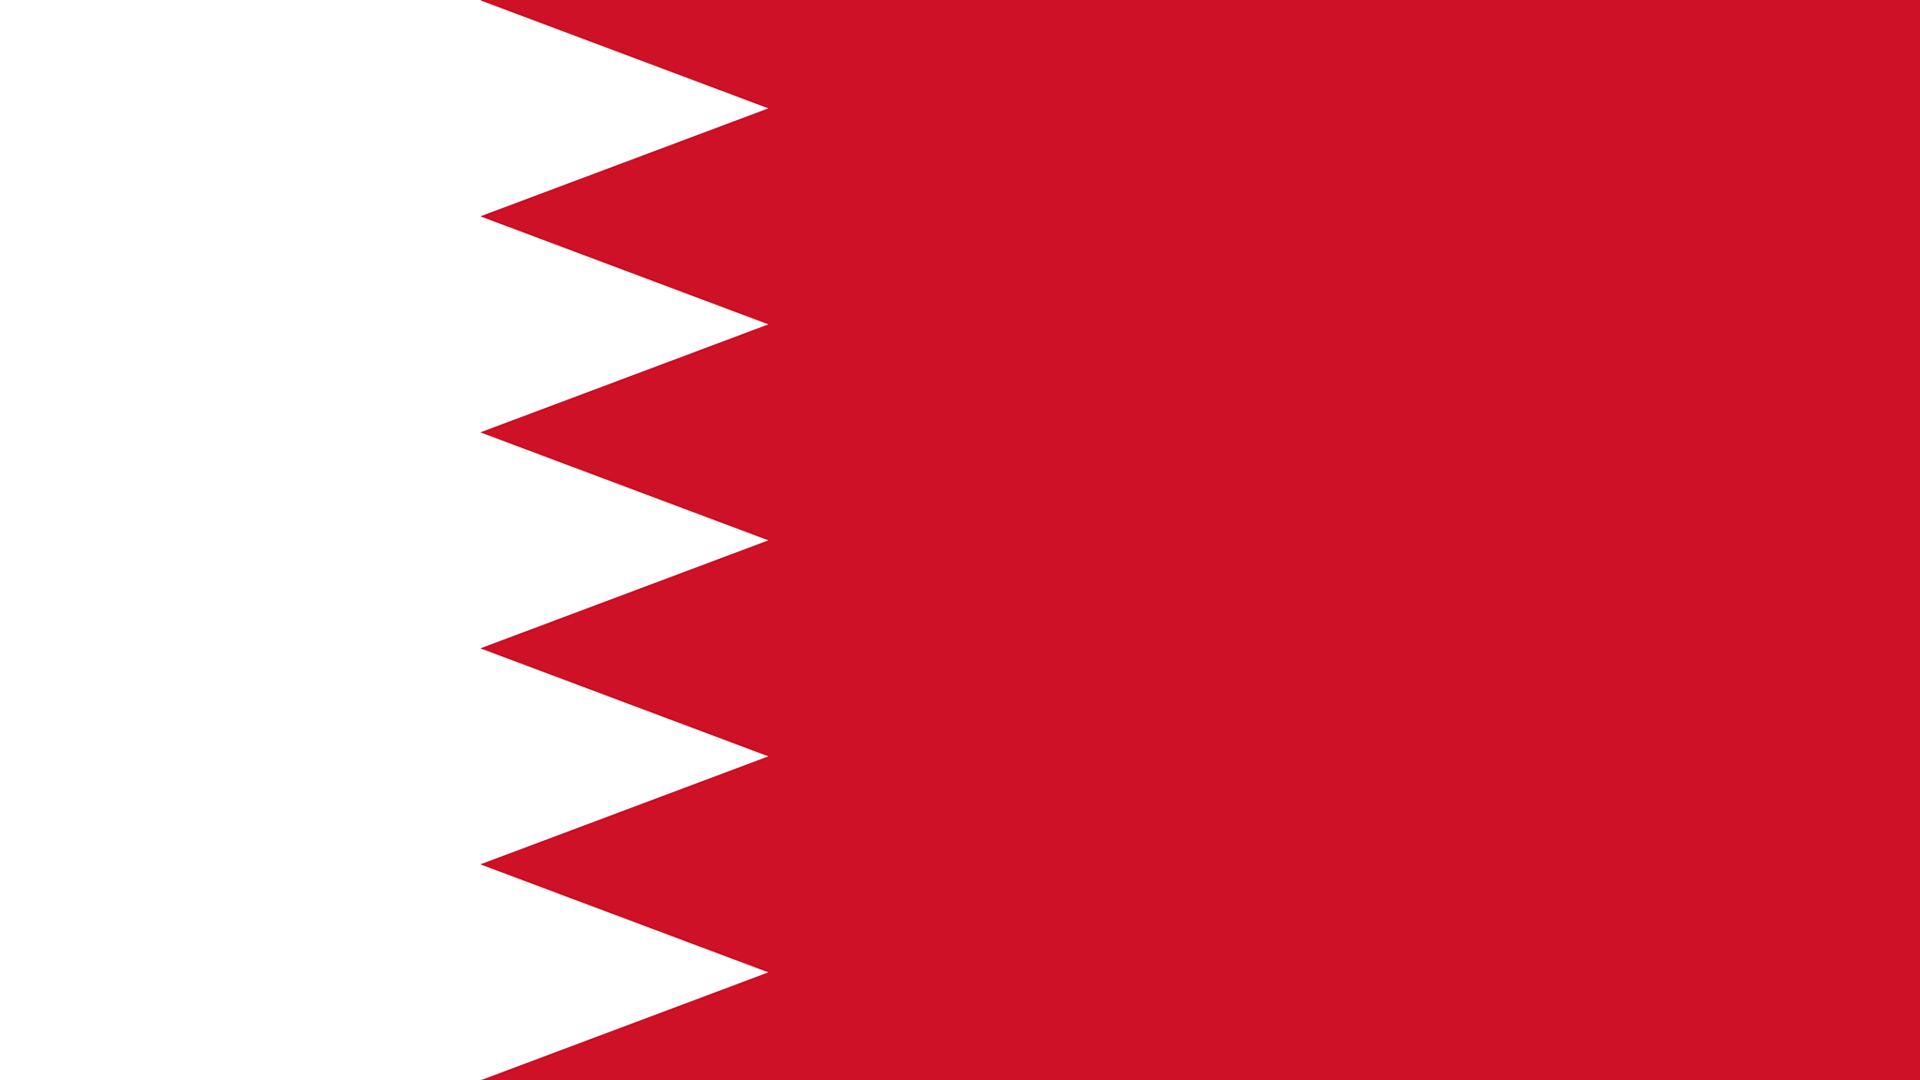 Bahrain Flag, High Definition, High Quality, Widescreen